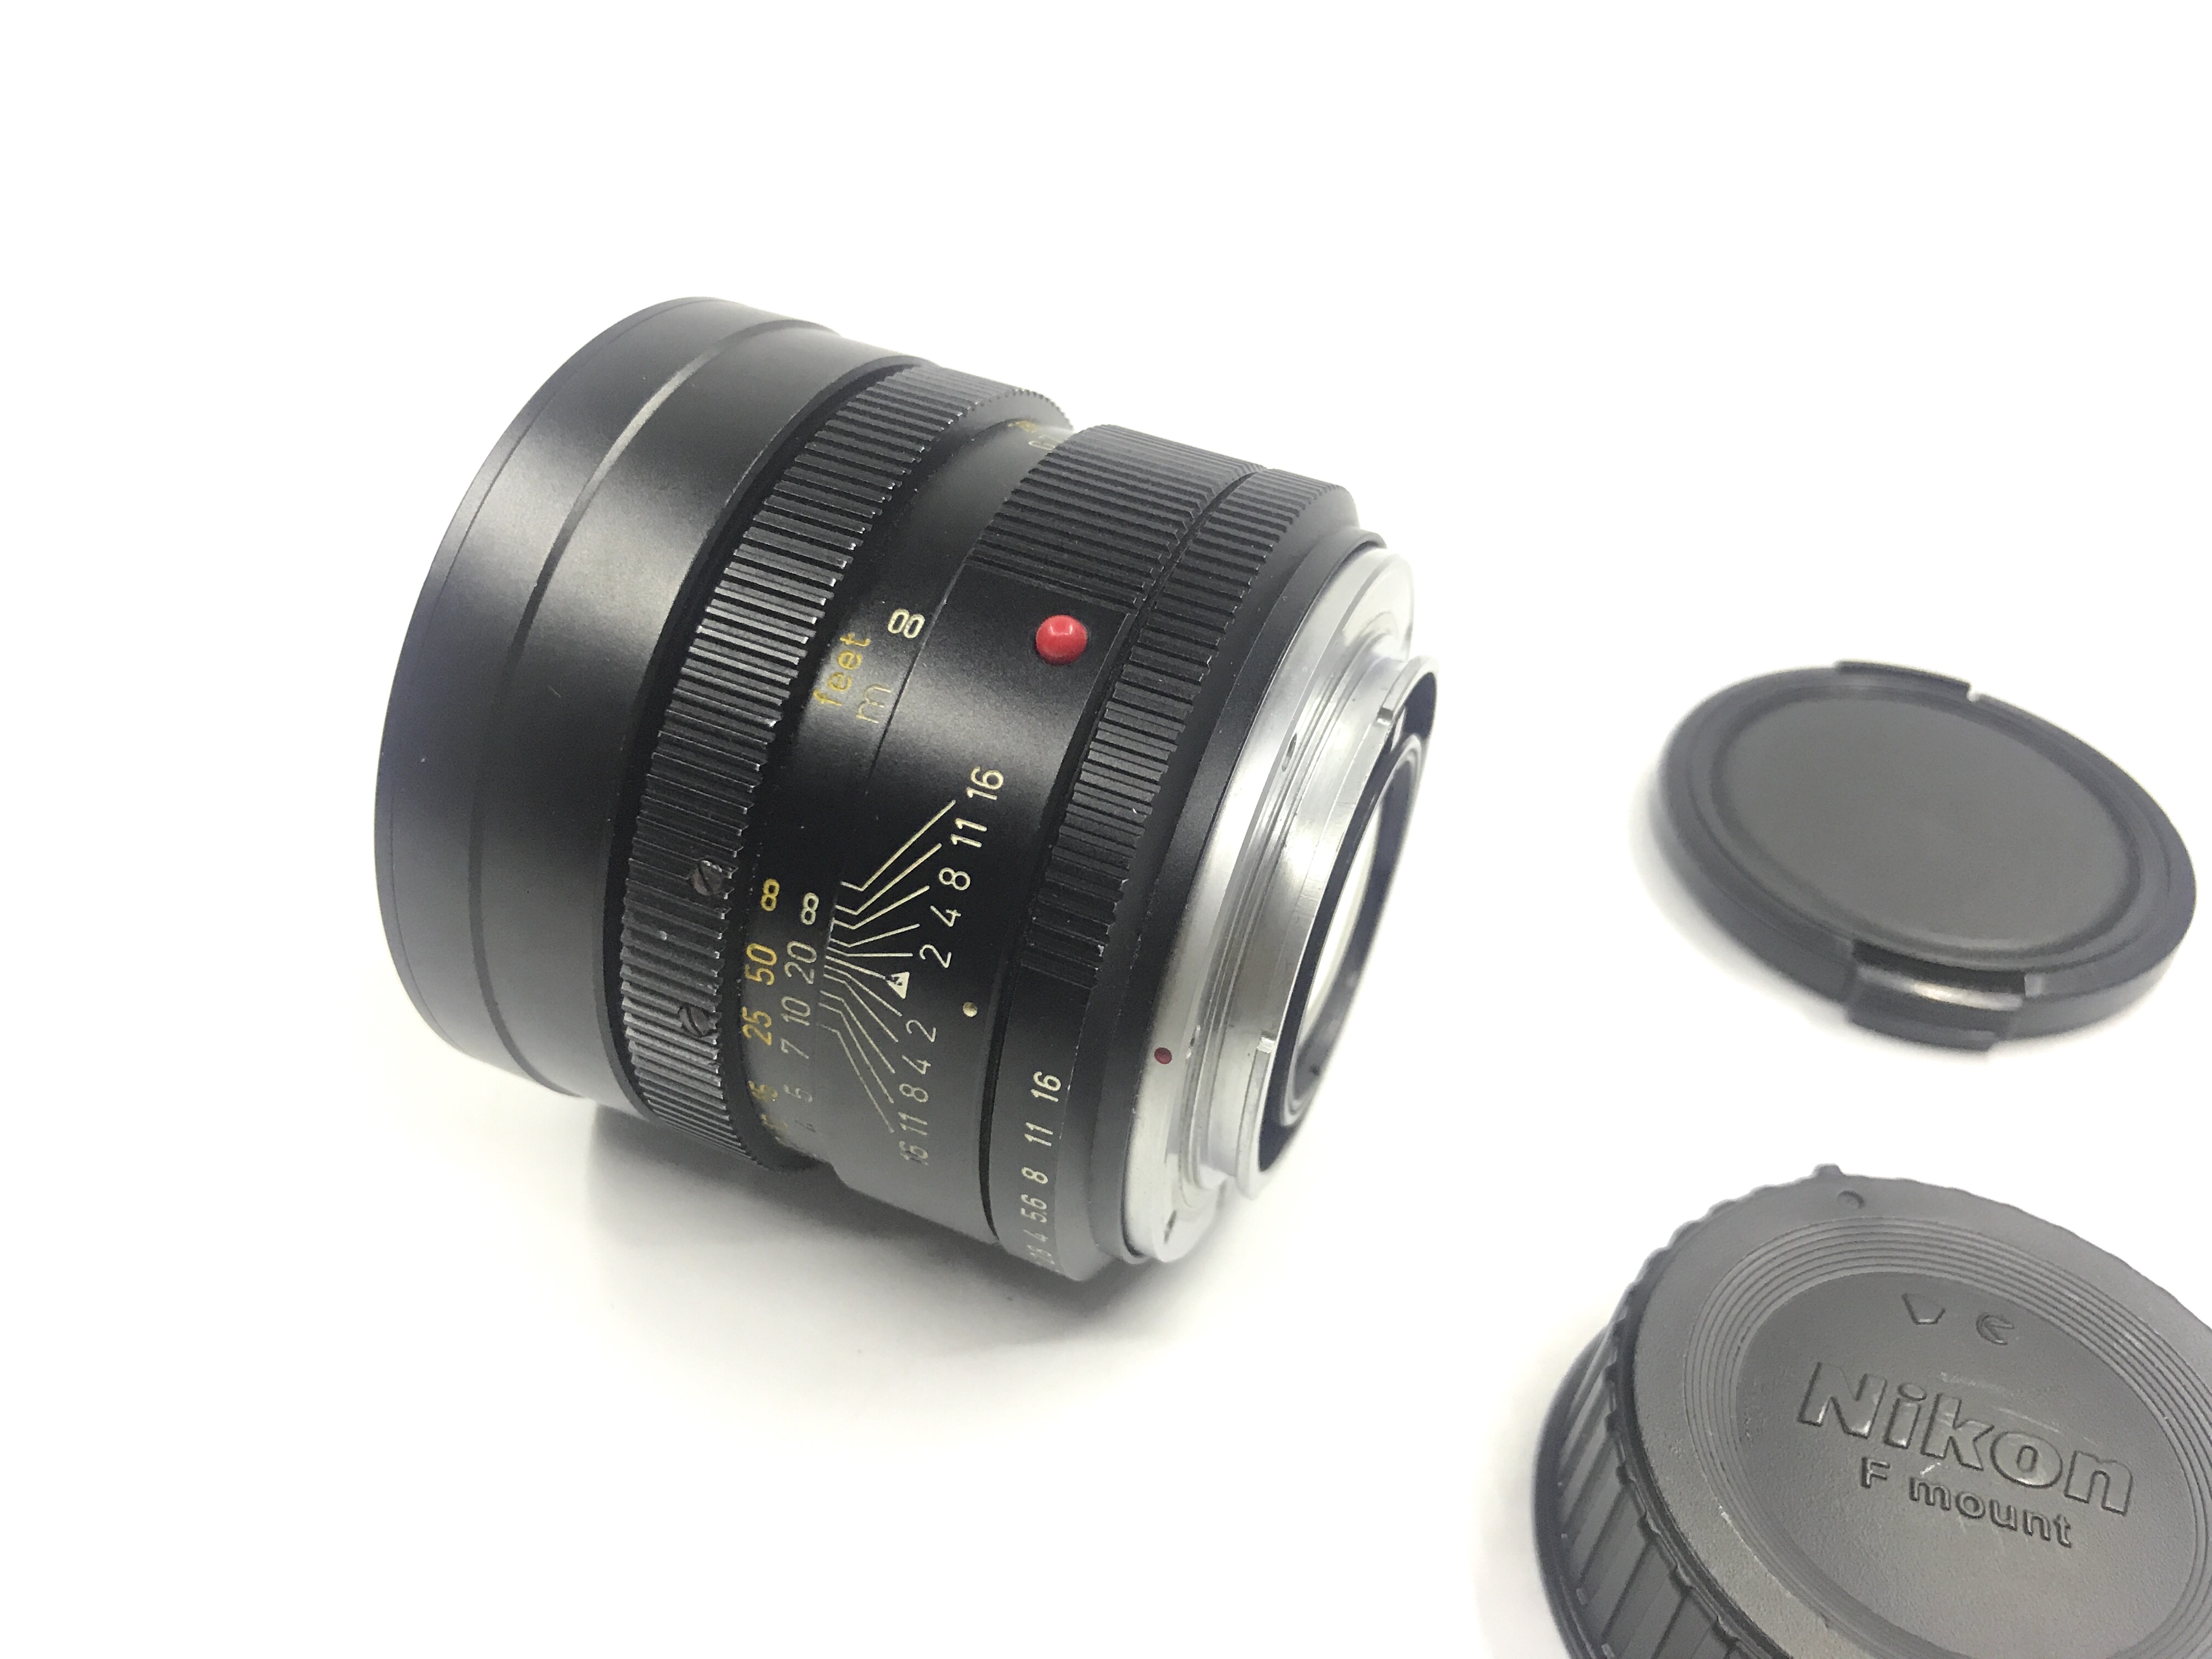  [Sold] Hao Cheng Se Leica R90 F2 E55 Big Head Jiu has been changed to Nikon Kou # 4901